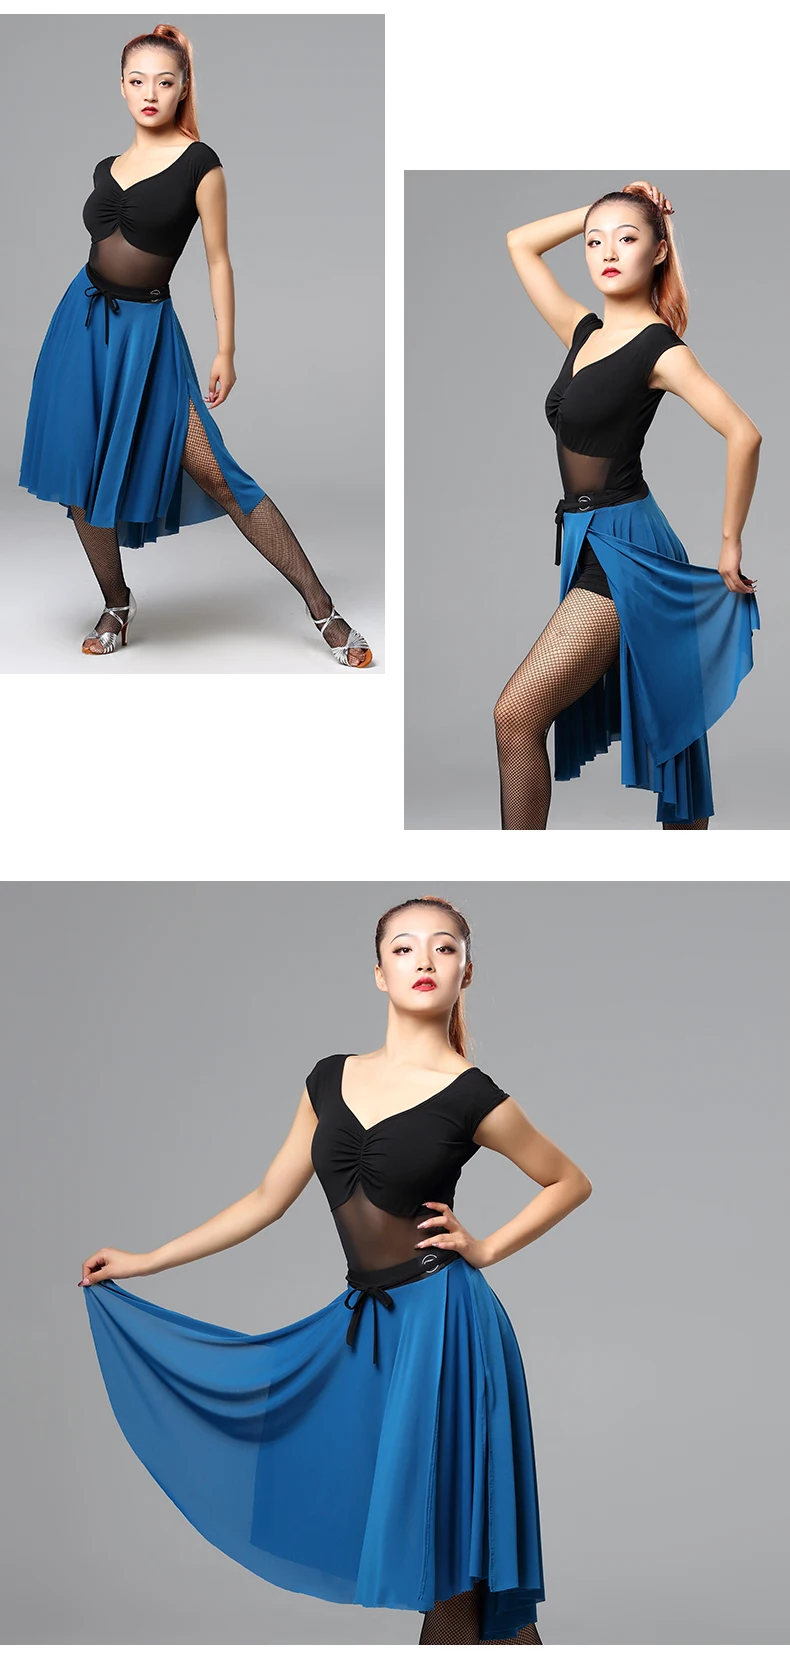 Женская верхняя панель для латинских танцев, распродажа, вальс, танго, бальных танцев, юбки, сексуальная одежда для тренировок, выступлений